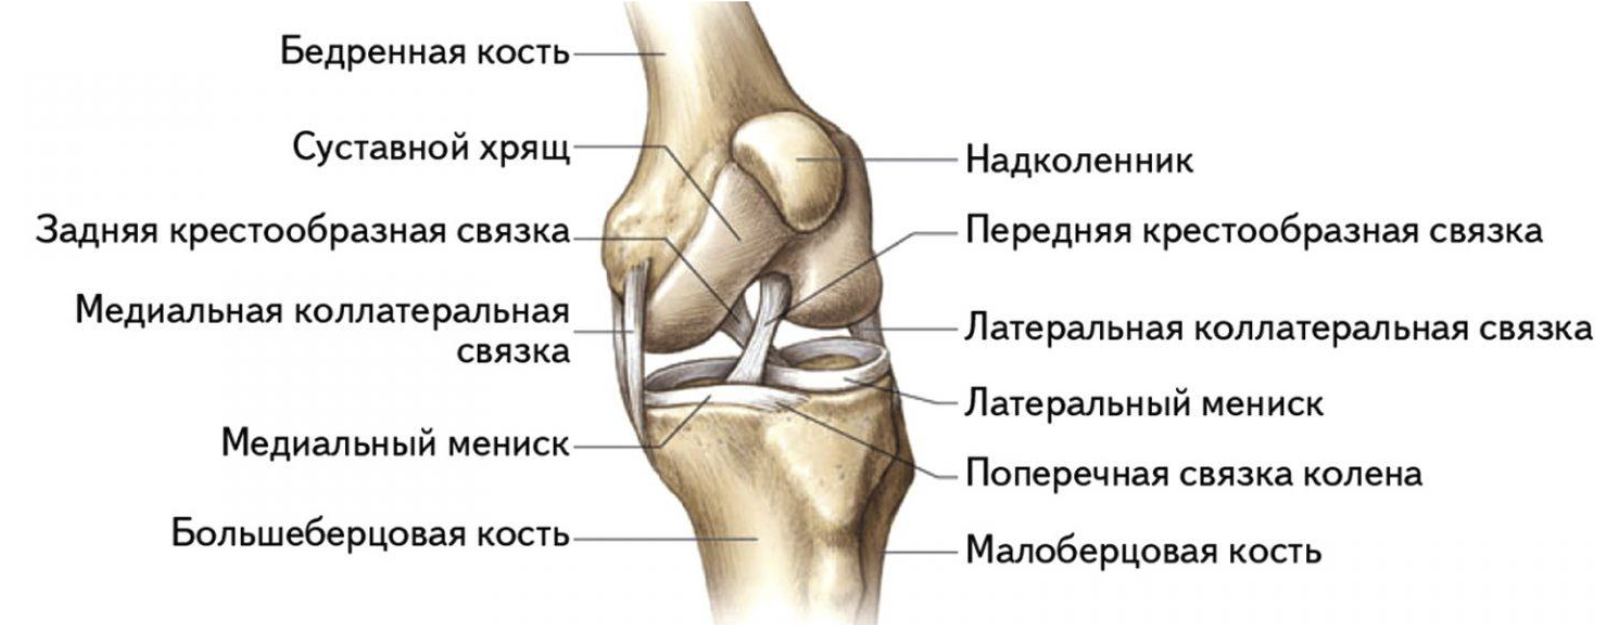 Связи коленного сустава. Коленный сустав строение анатомия связки. Суставной хрящ большеберцовой кости. Коленный сустав анатомия вид сбоку. Поперечная связка коленного сустава анатомия.